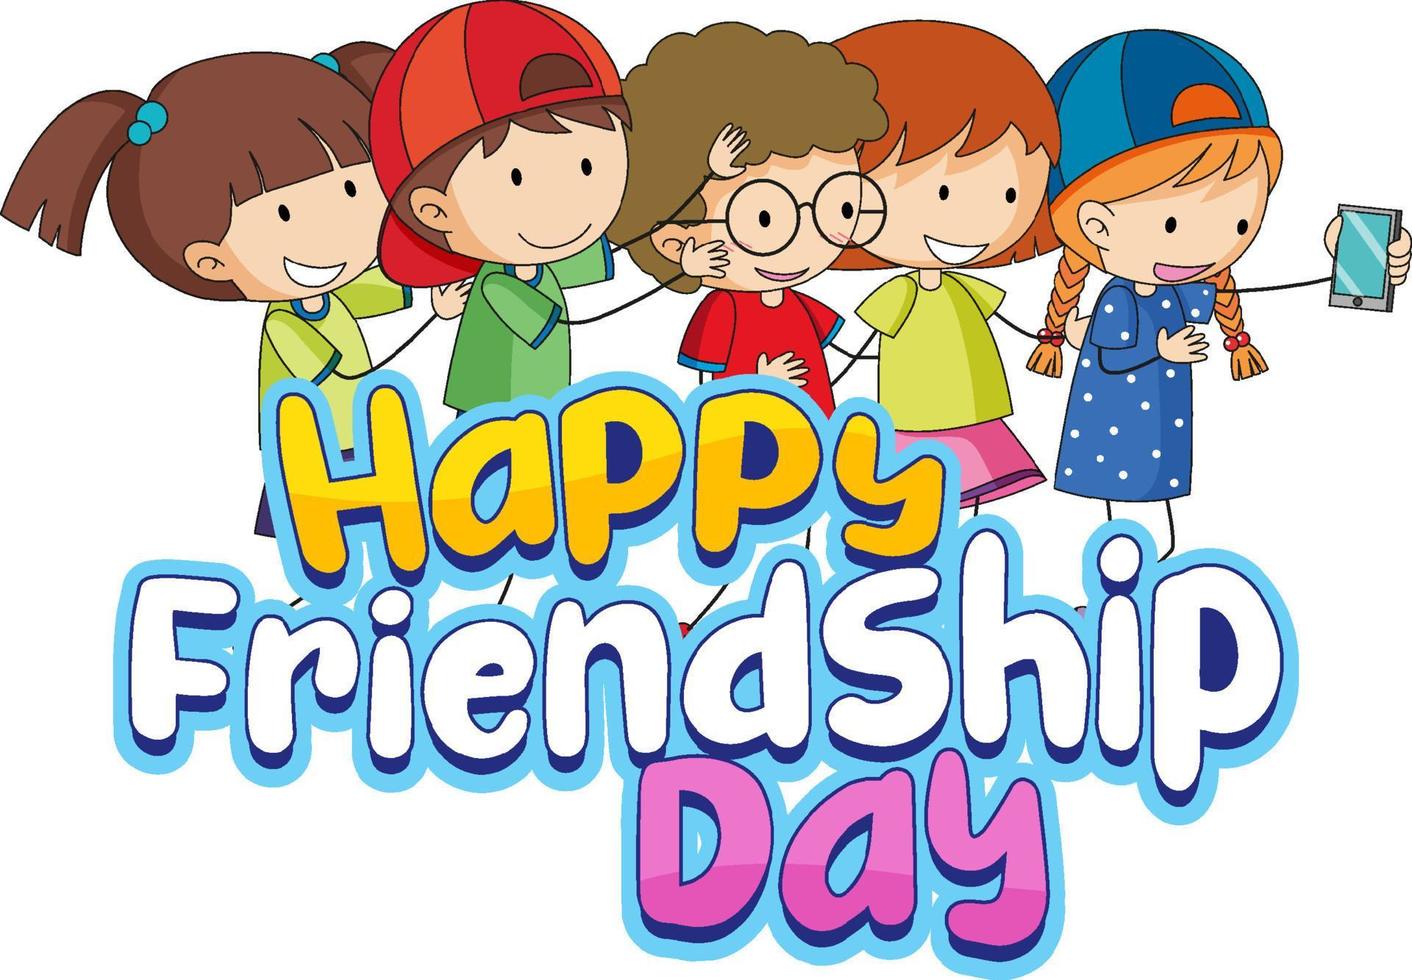 fijne vriendschapsdag met doodle-personages voor kinderen vector